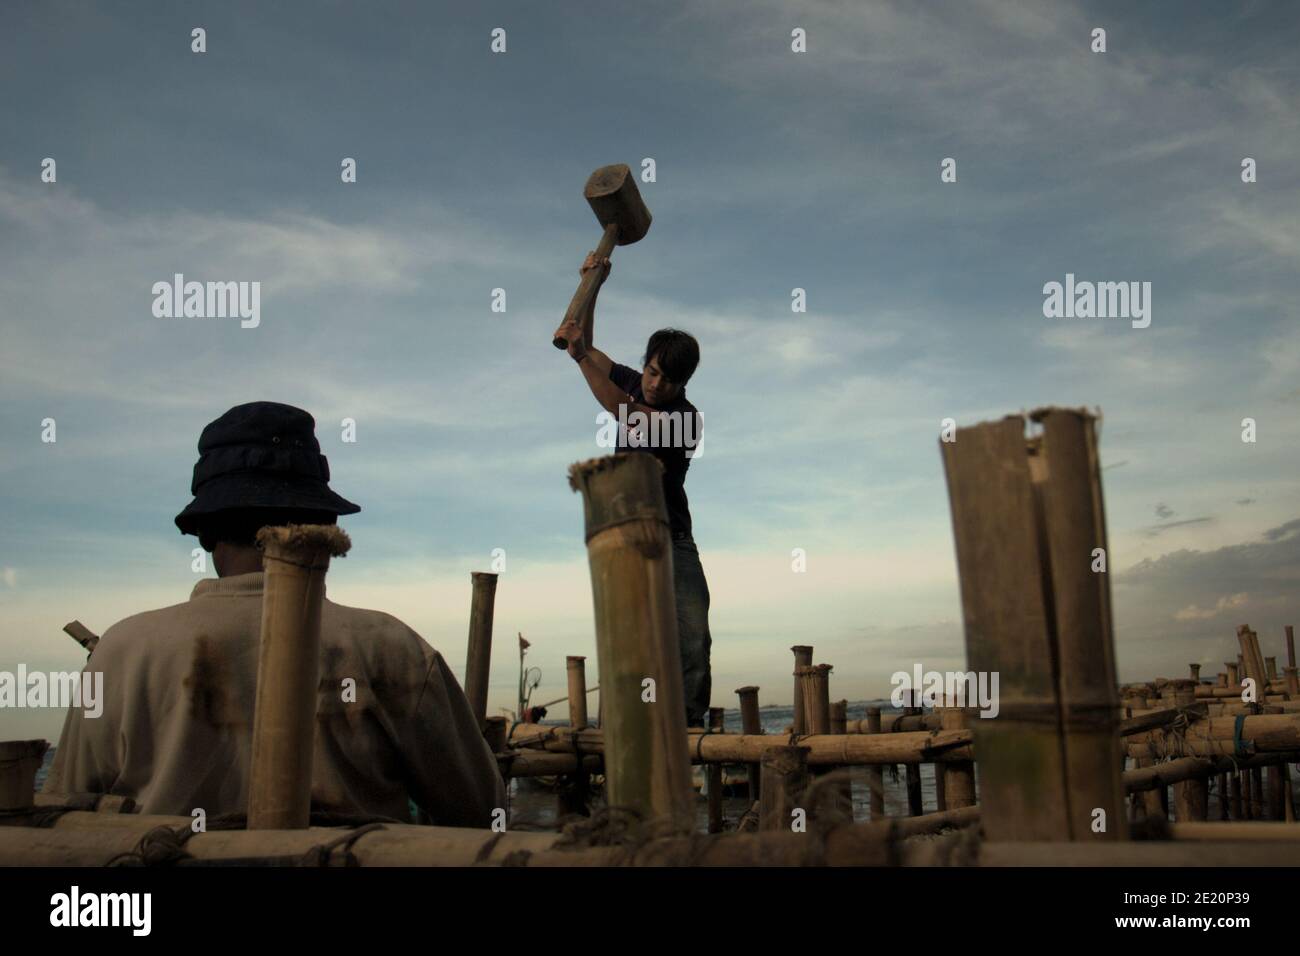 Des hommes construisent une structure côtière à l'aide de poteaux en bambou, un bâtiment à pilotis au-dessus de l'eau de mer dans le village de pêcheurs de Cilincing, sur la zone côtière de Jakarta, en Indonésie. Photo d'archives (2008). Banque D'Images